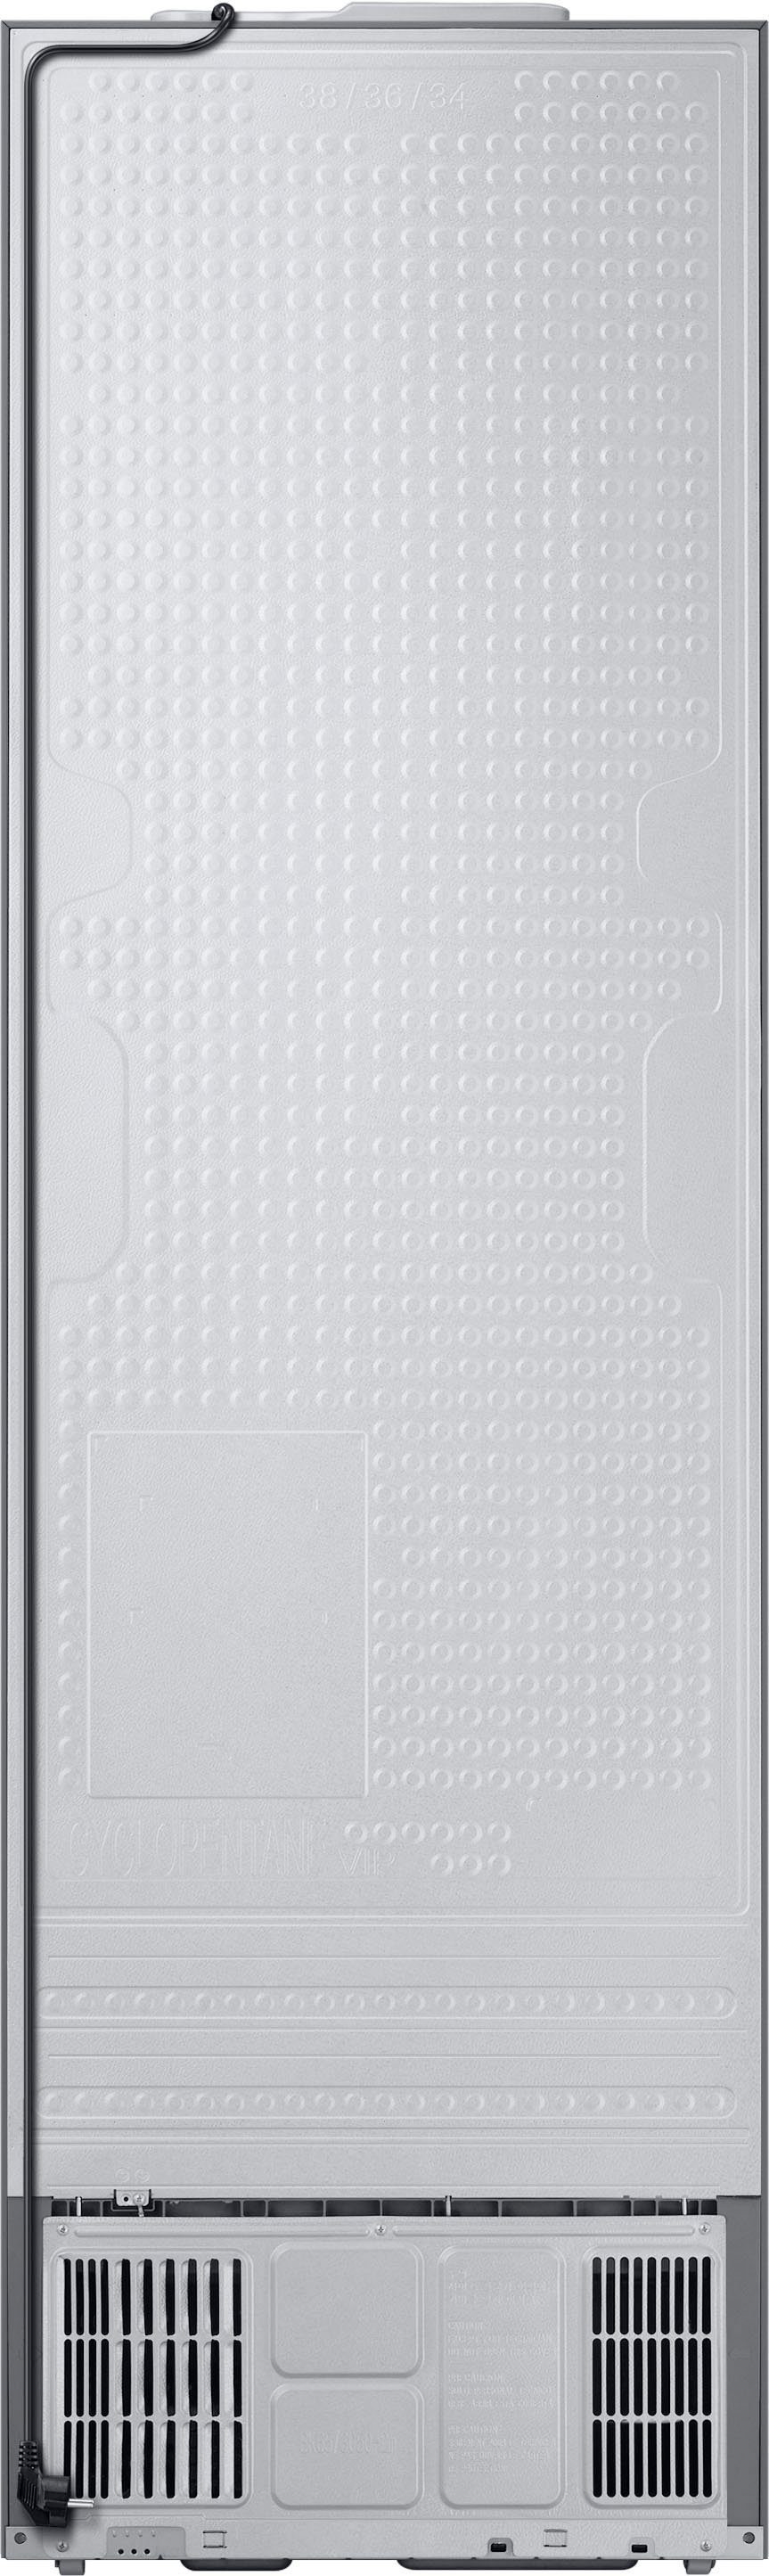 Samsung Kühl-/Gefrierkombination RL38T600CSA, 203,0 cm cm hoch, 59,5 breit